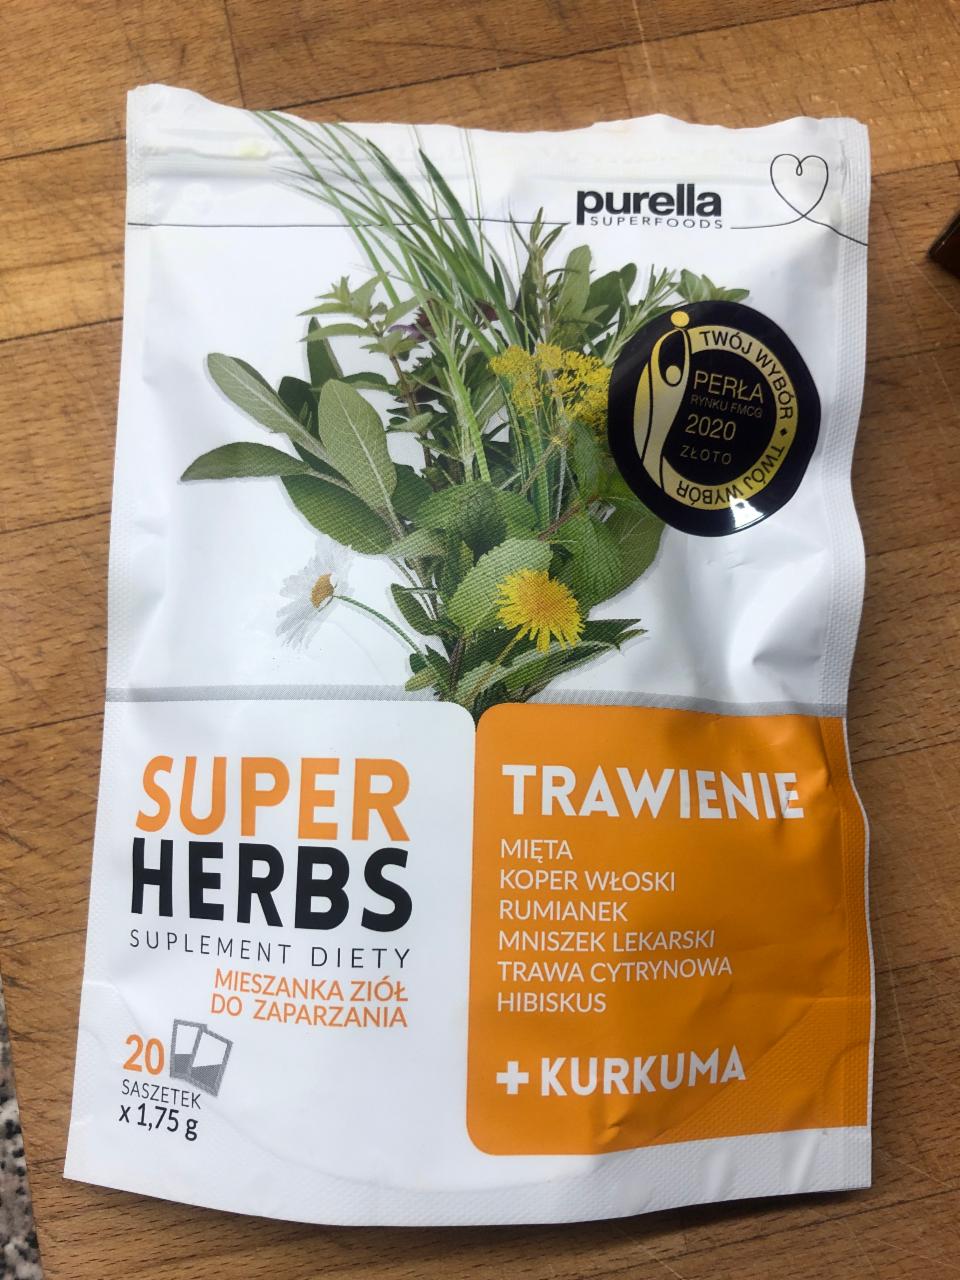 Zdjęcia - Super Herbs Trawienie Purella Superfoods